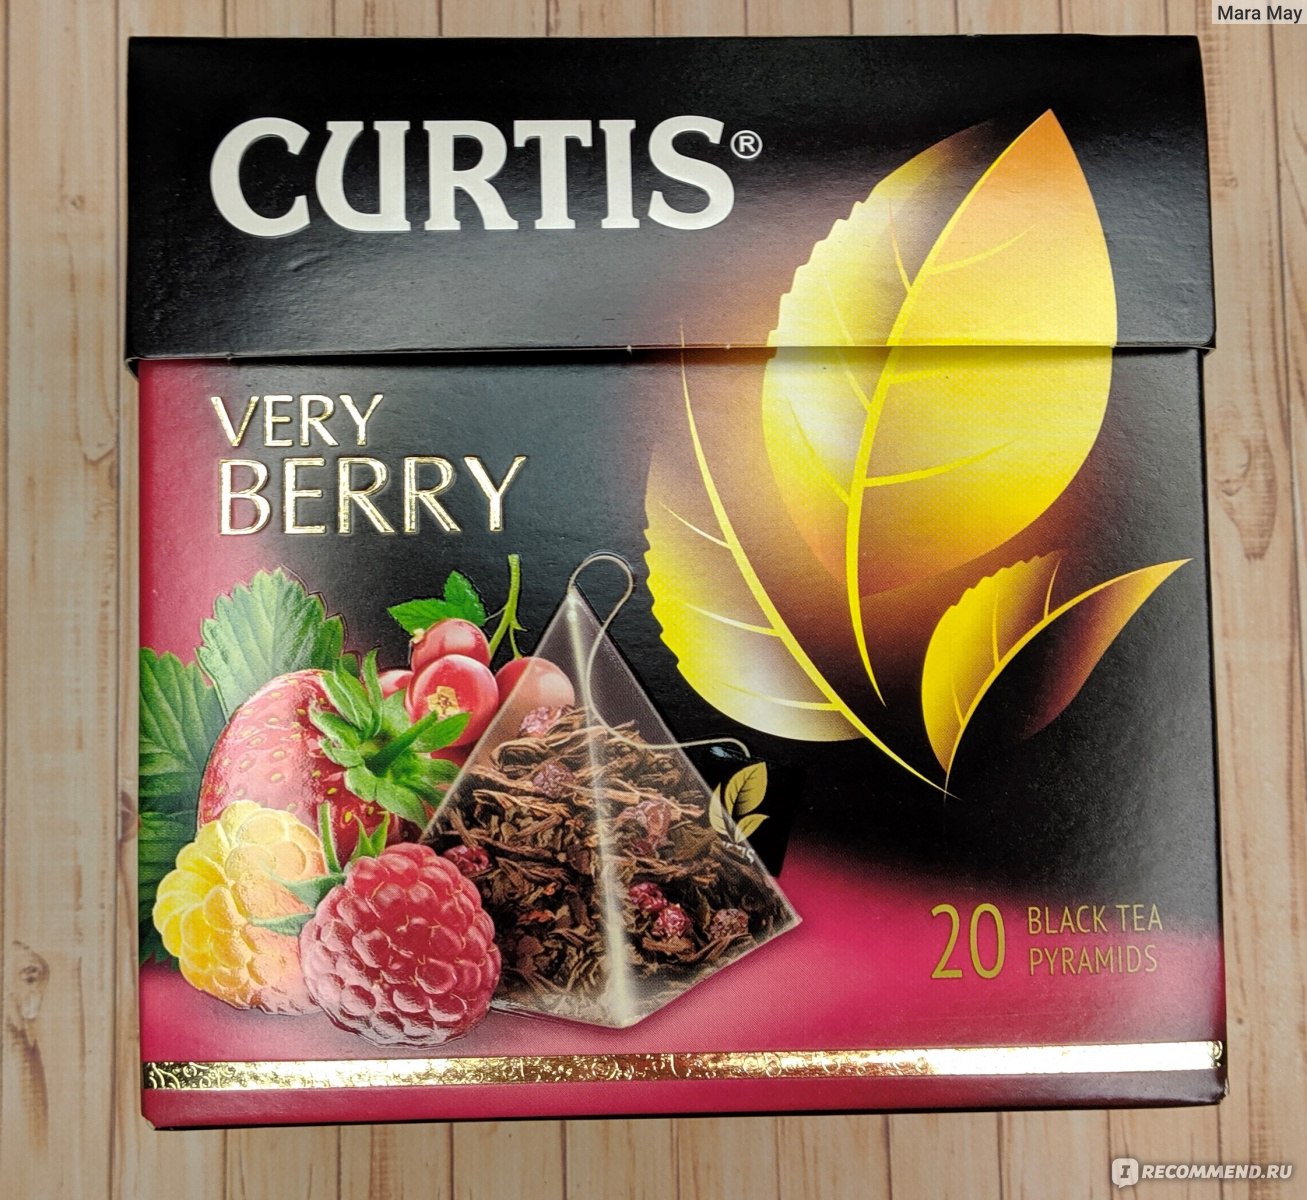 Curtis berry mistress